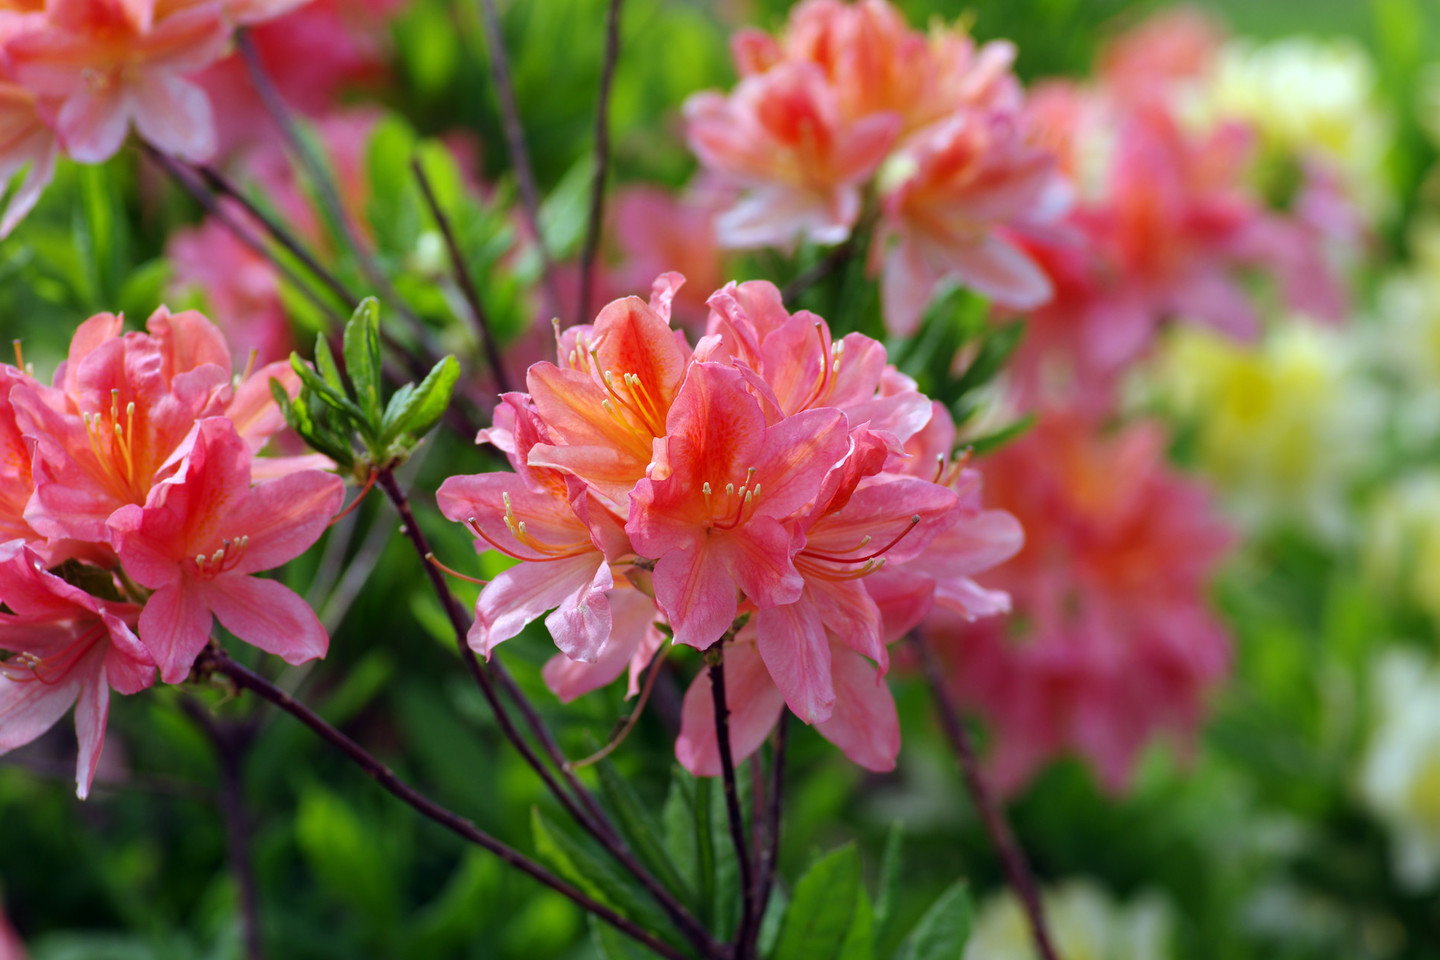 Gerai prižiūrimi rododendrai – nepamainoma sodybos puošmena.<br>Shutterstock nuotr.